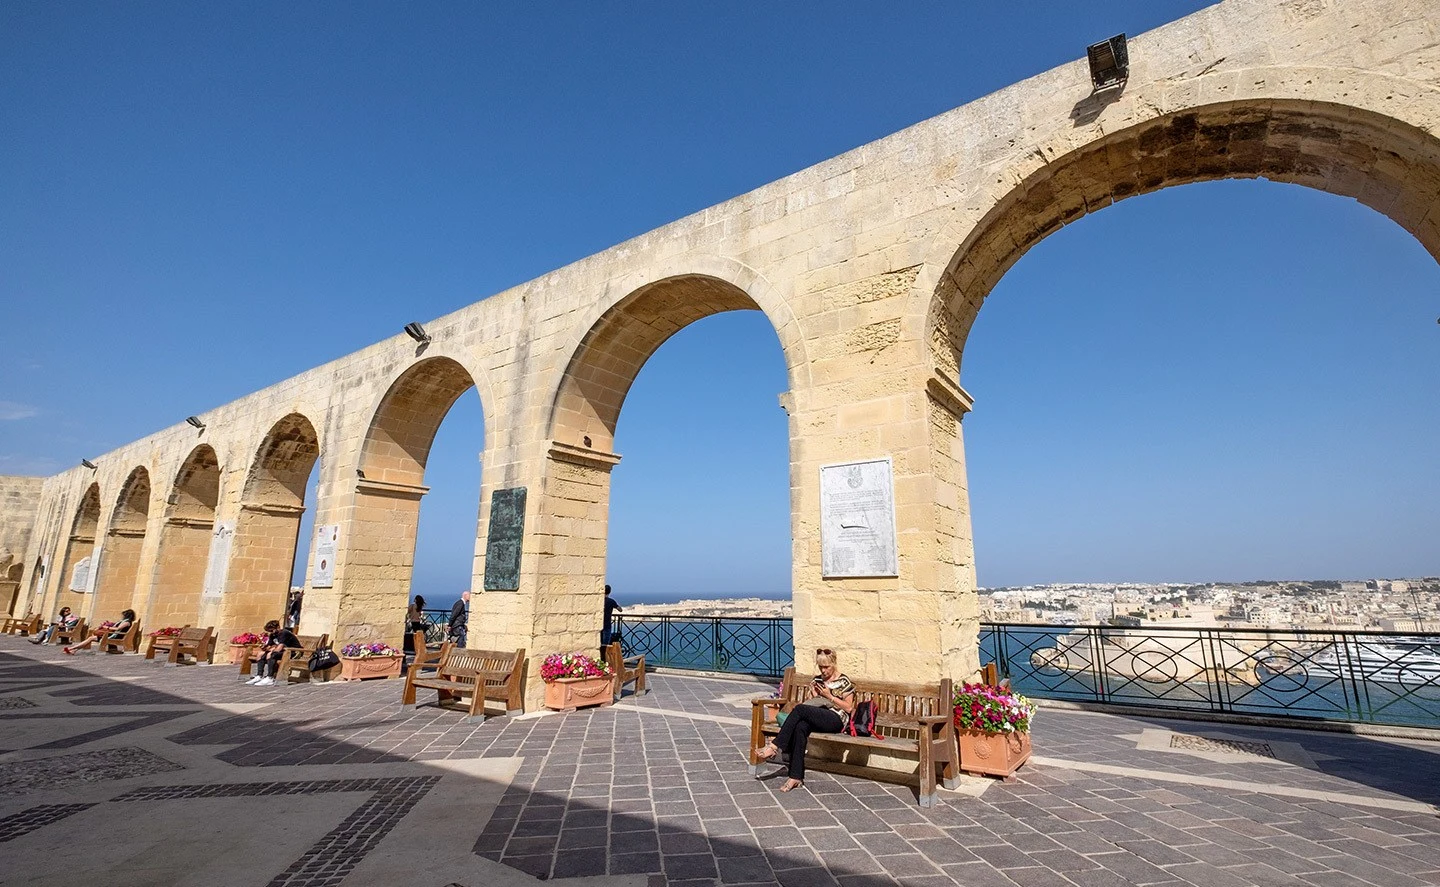 The Upper Barrakka Gardens in Valletta